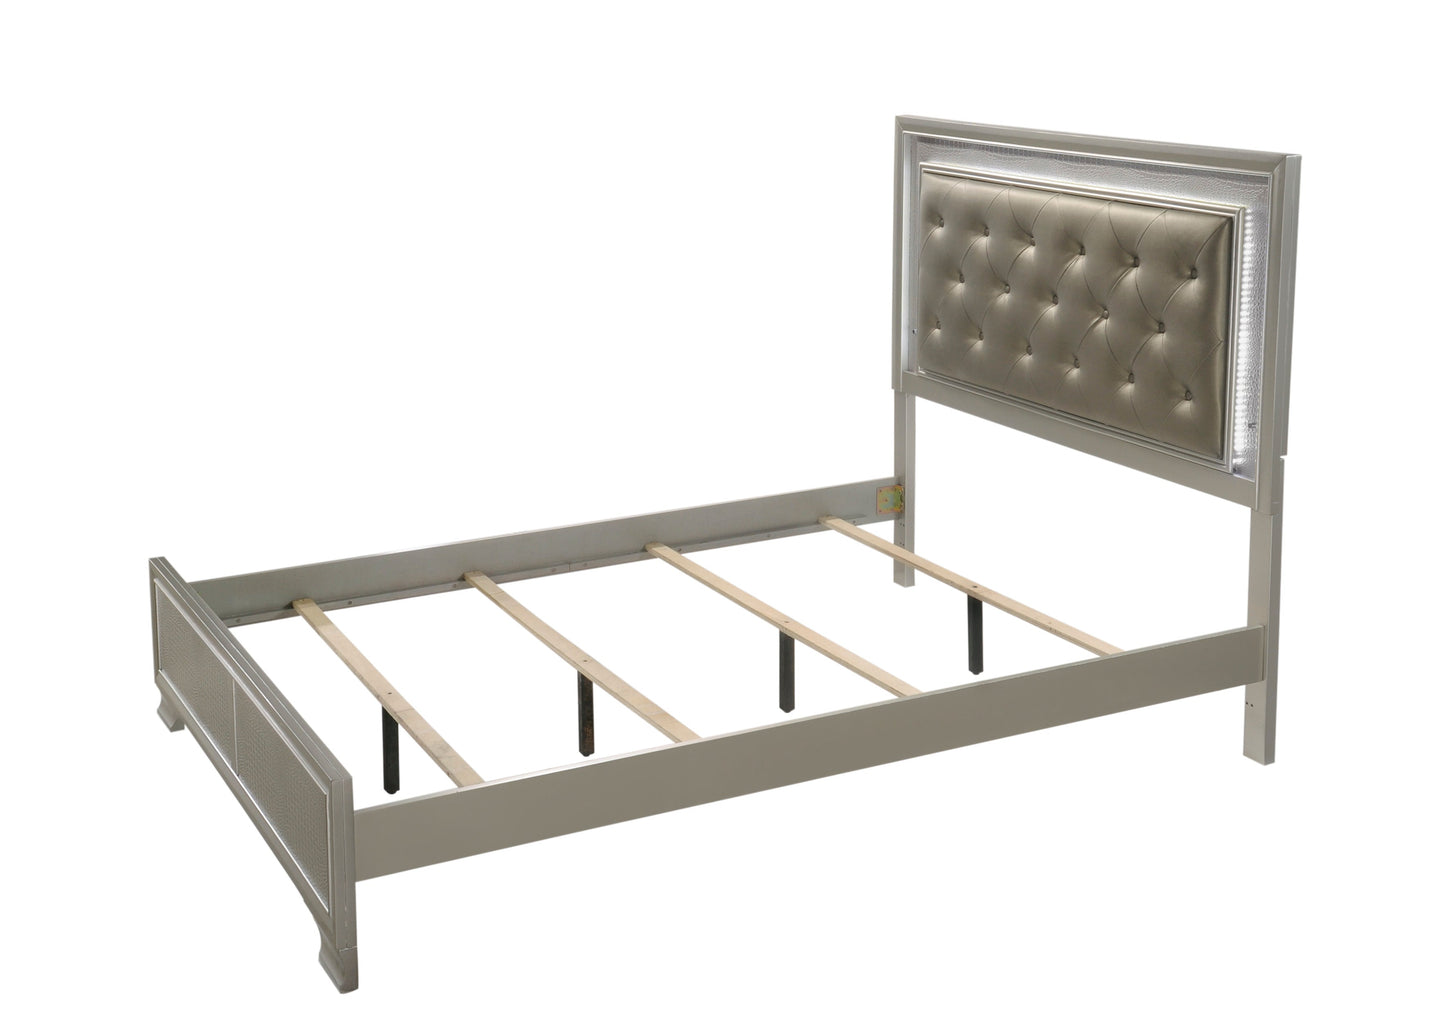 Ginebra Champagne LED Upholstered Panel Bedroom Set